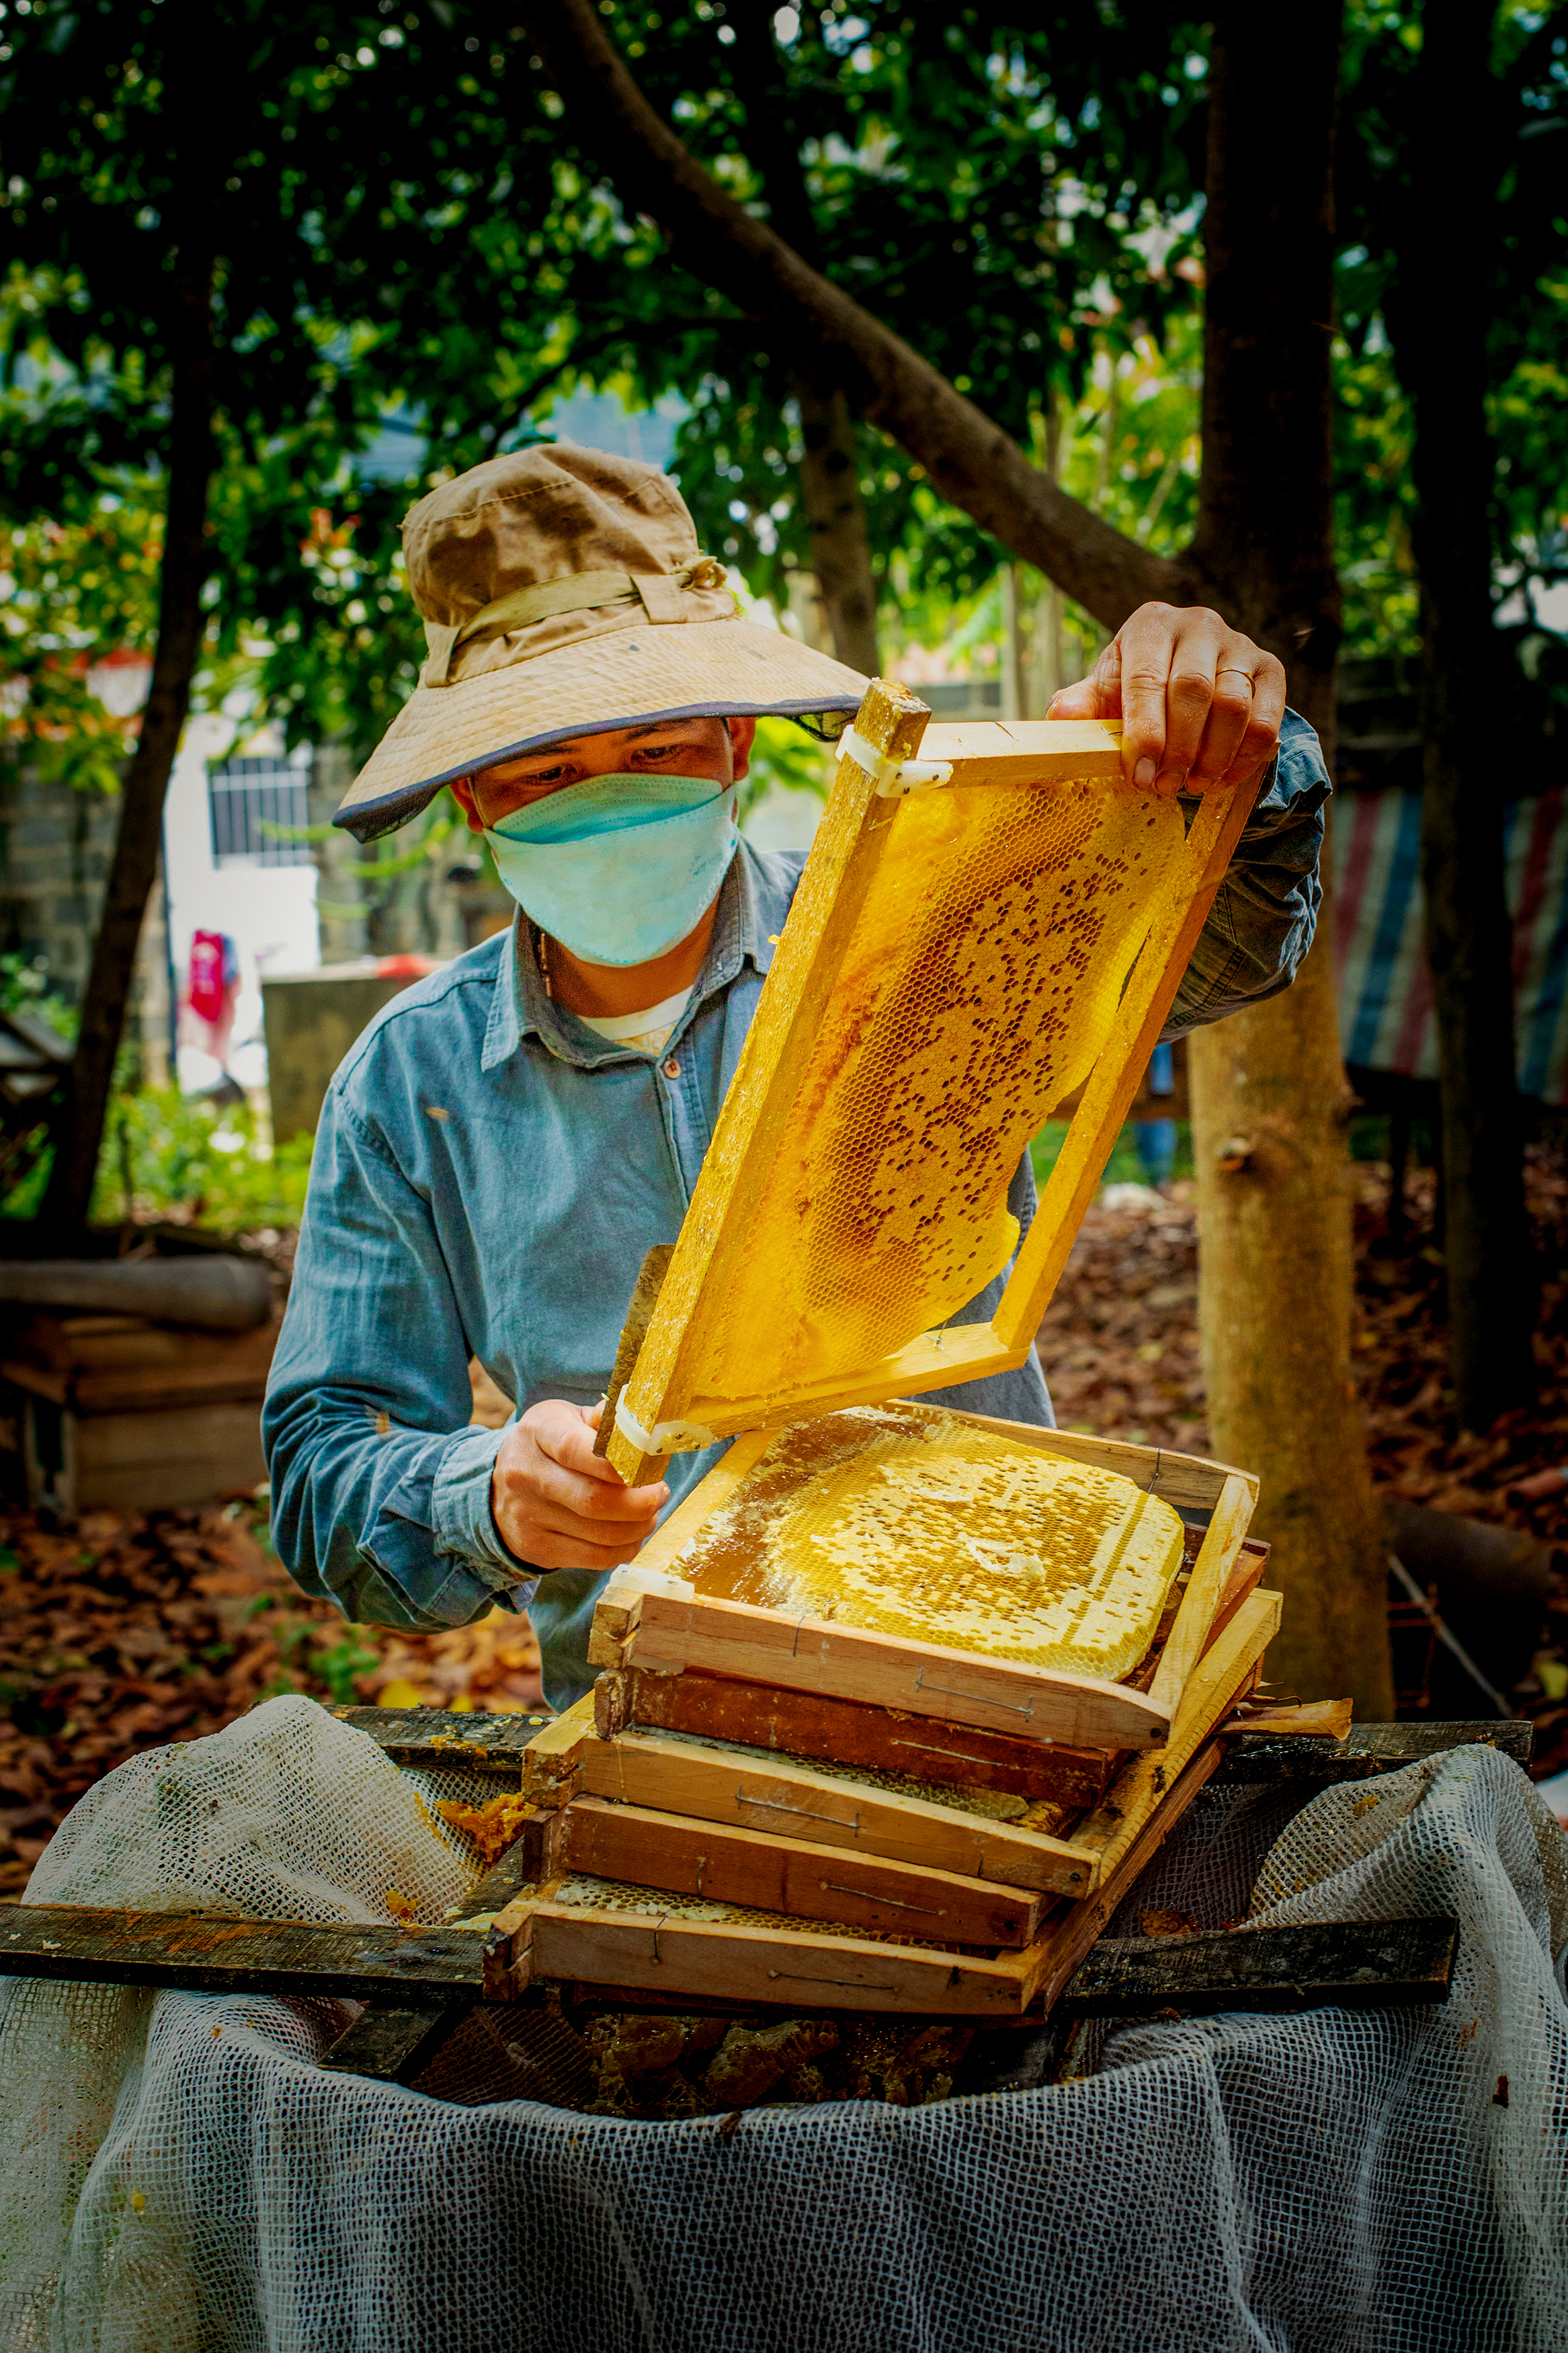 Thu hoạch mật ong